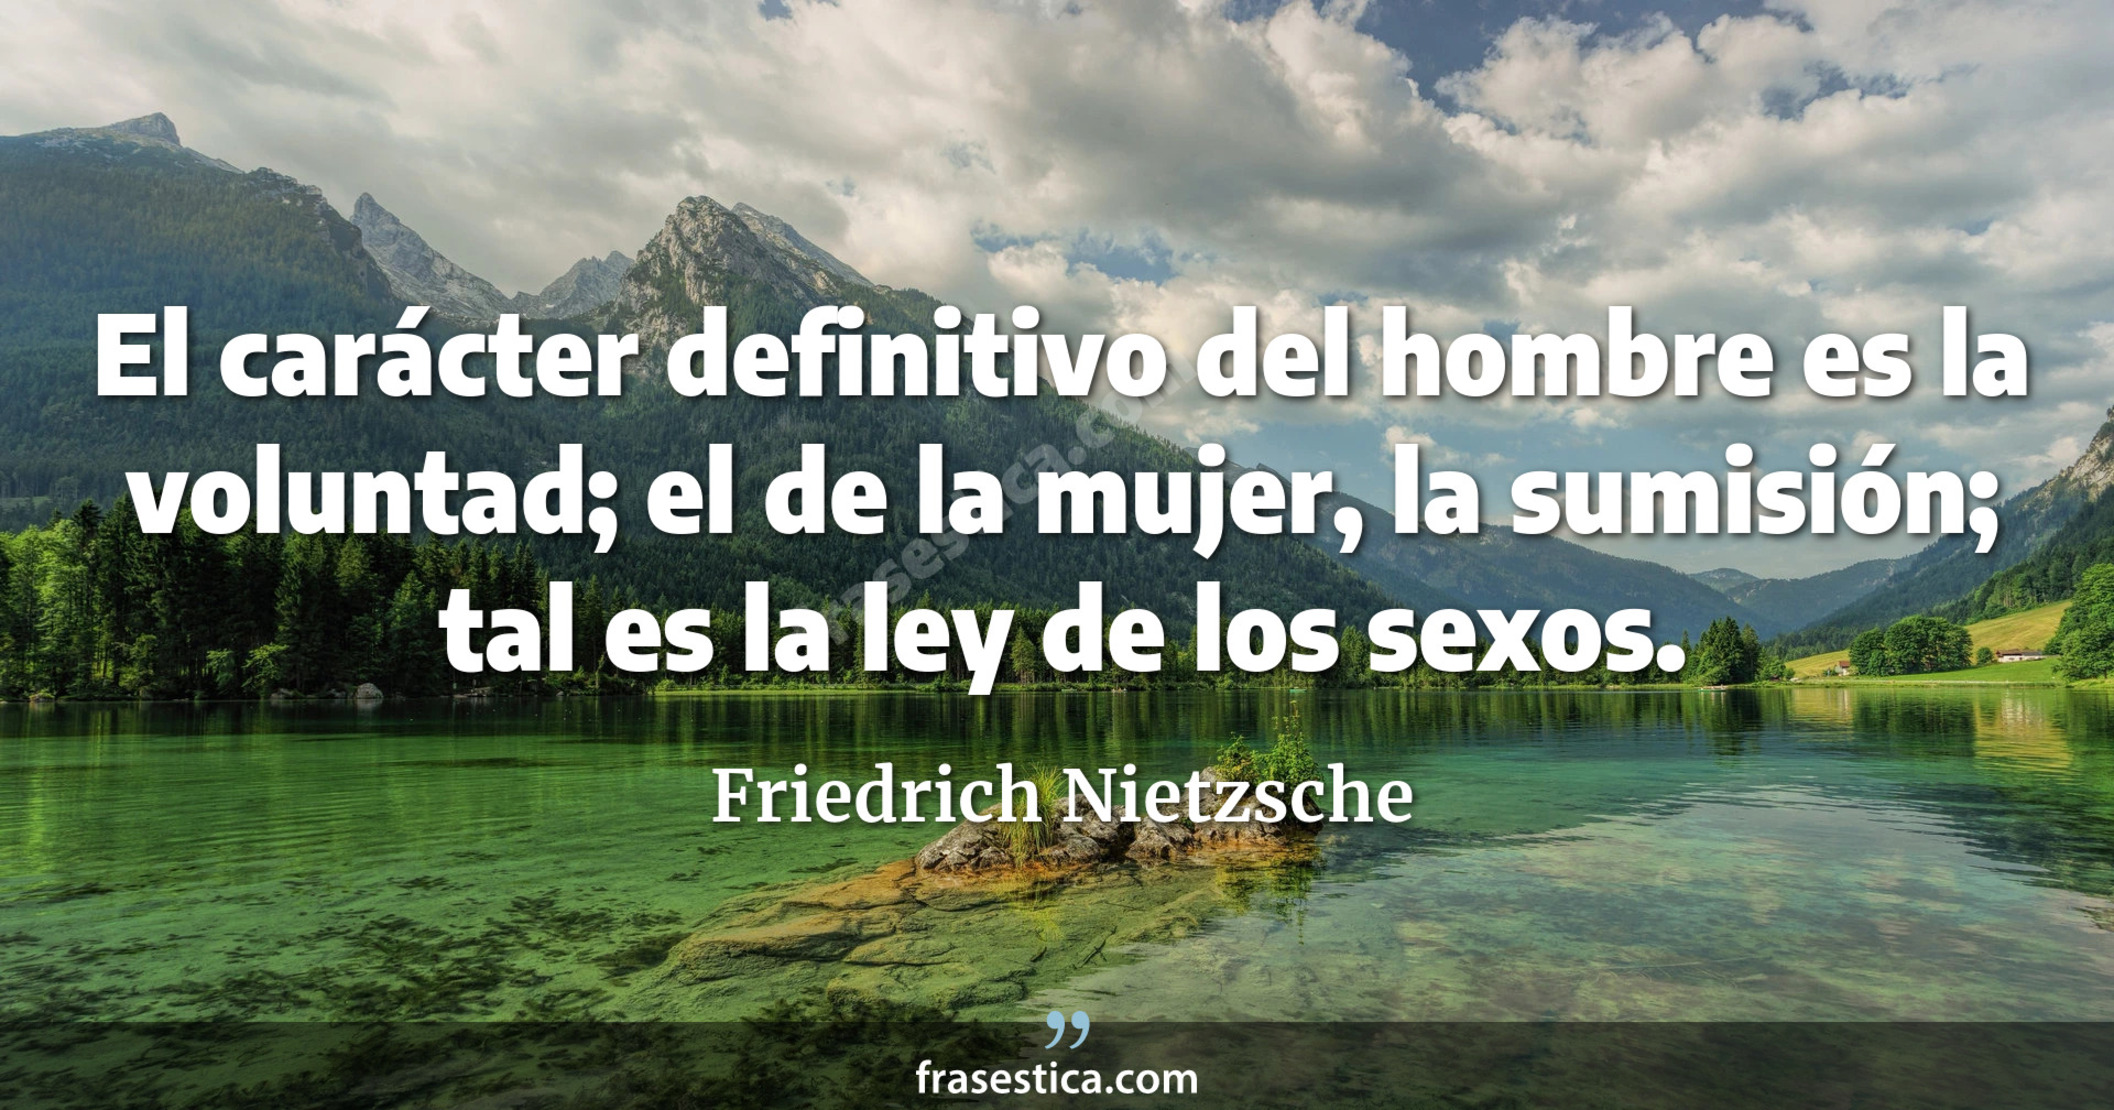 El carácter definitivo del hombre es la voluntad; el de la mujer, la sumisión; tal es la ley de los sexos. - Friedrich Nietzsche